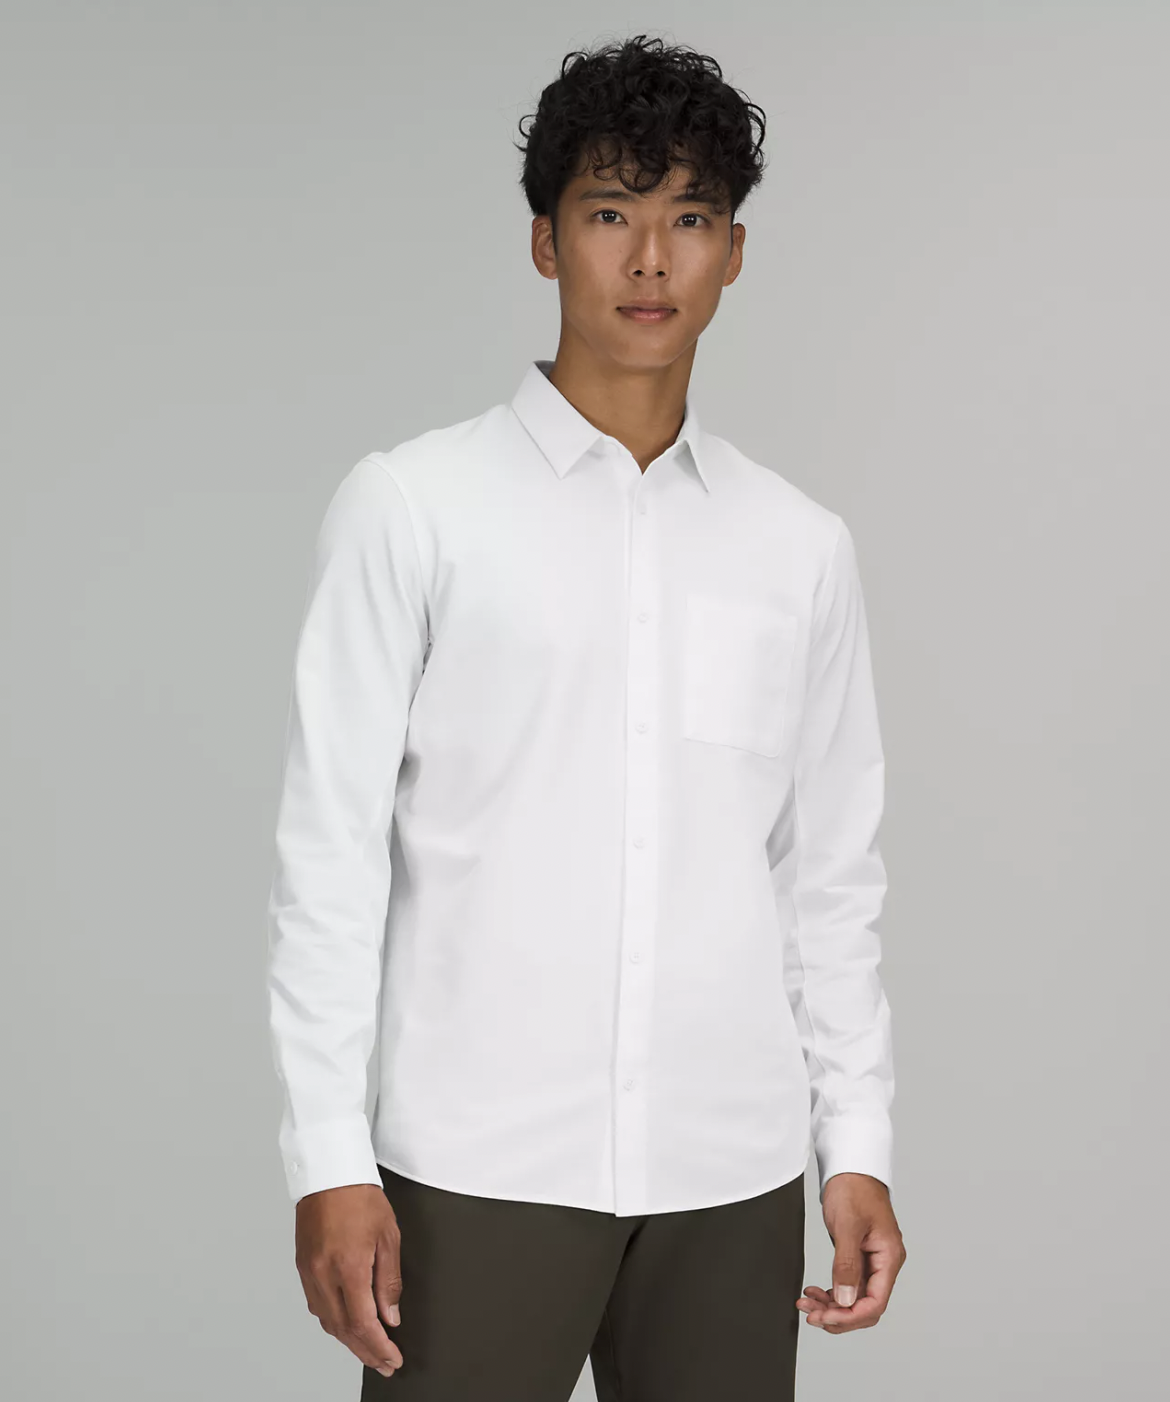 best white dress shirts for men